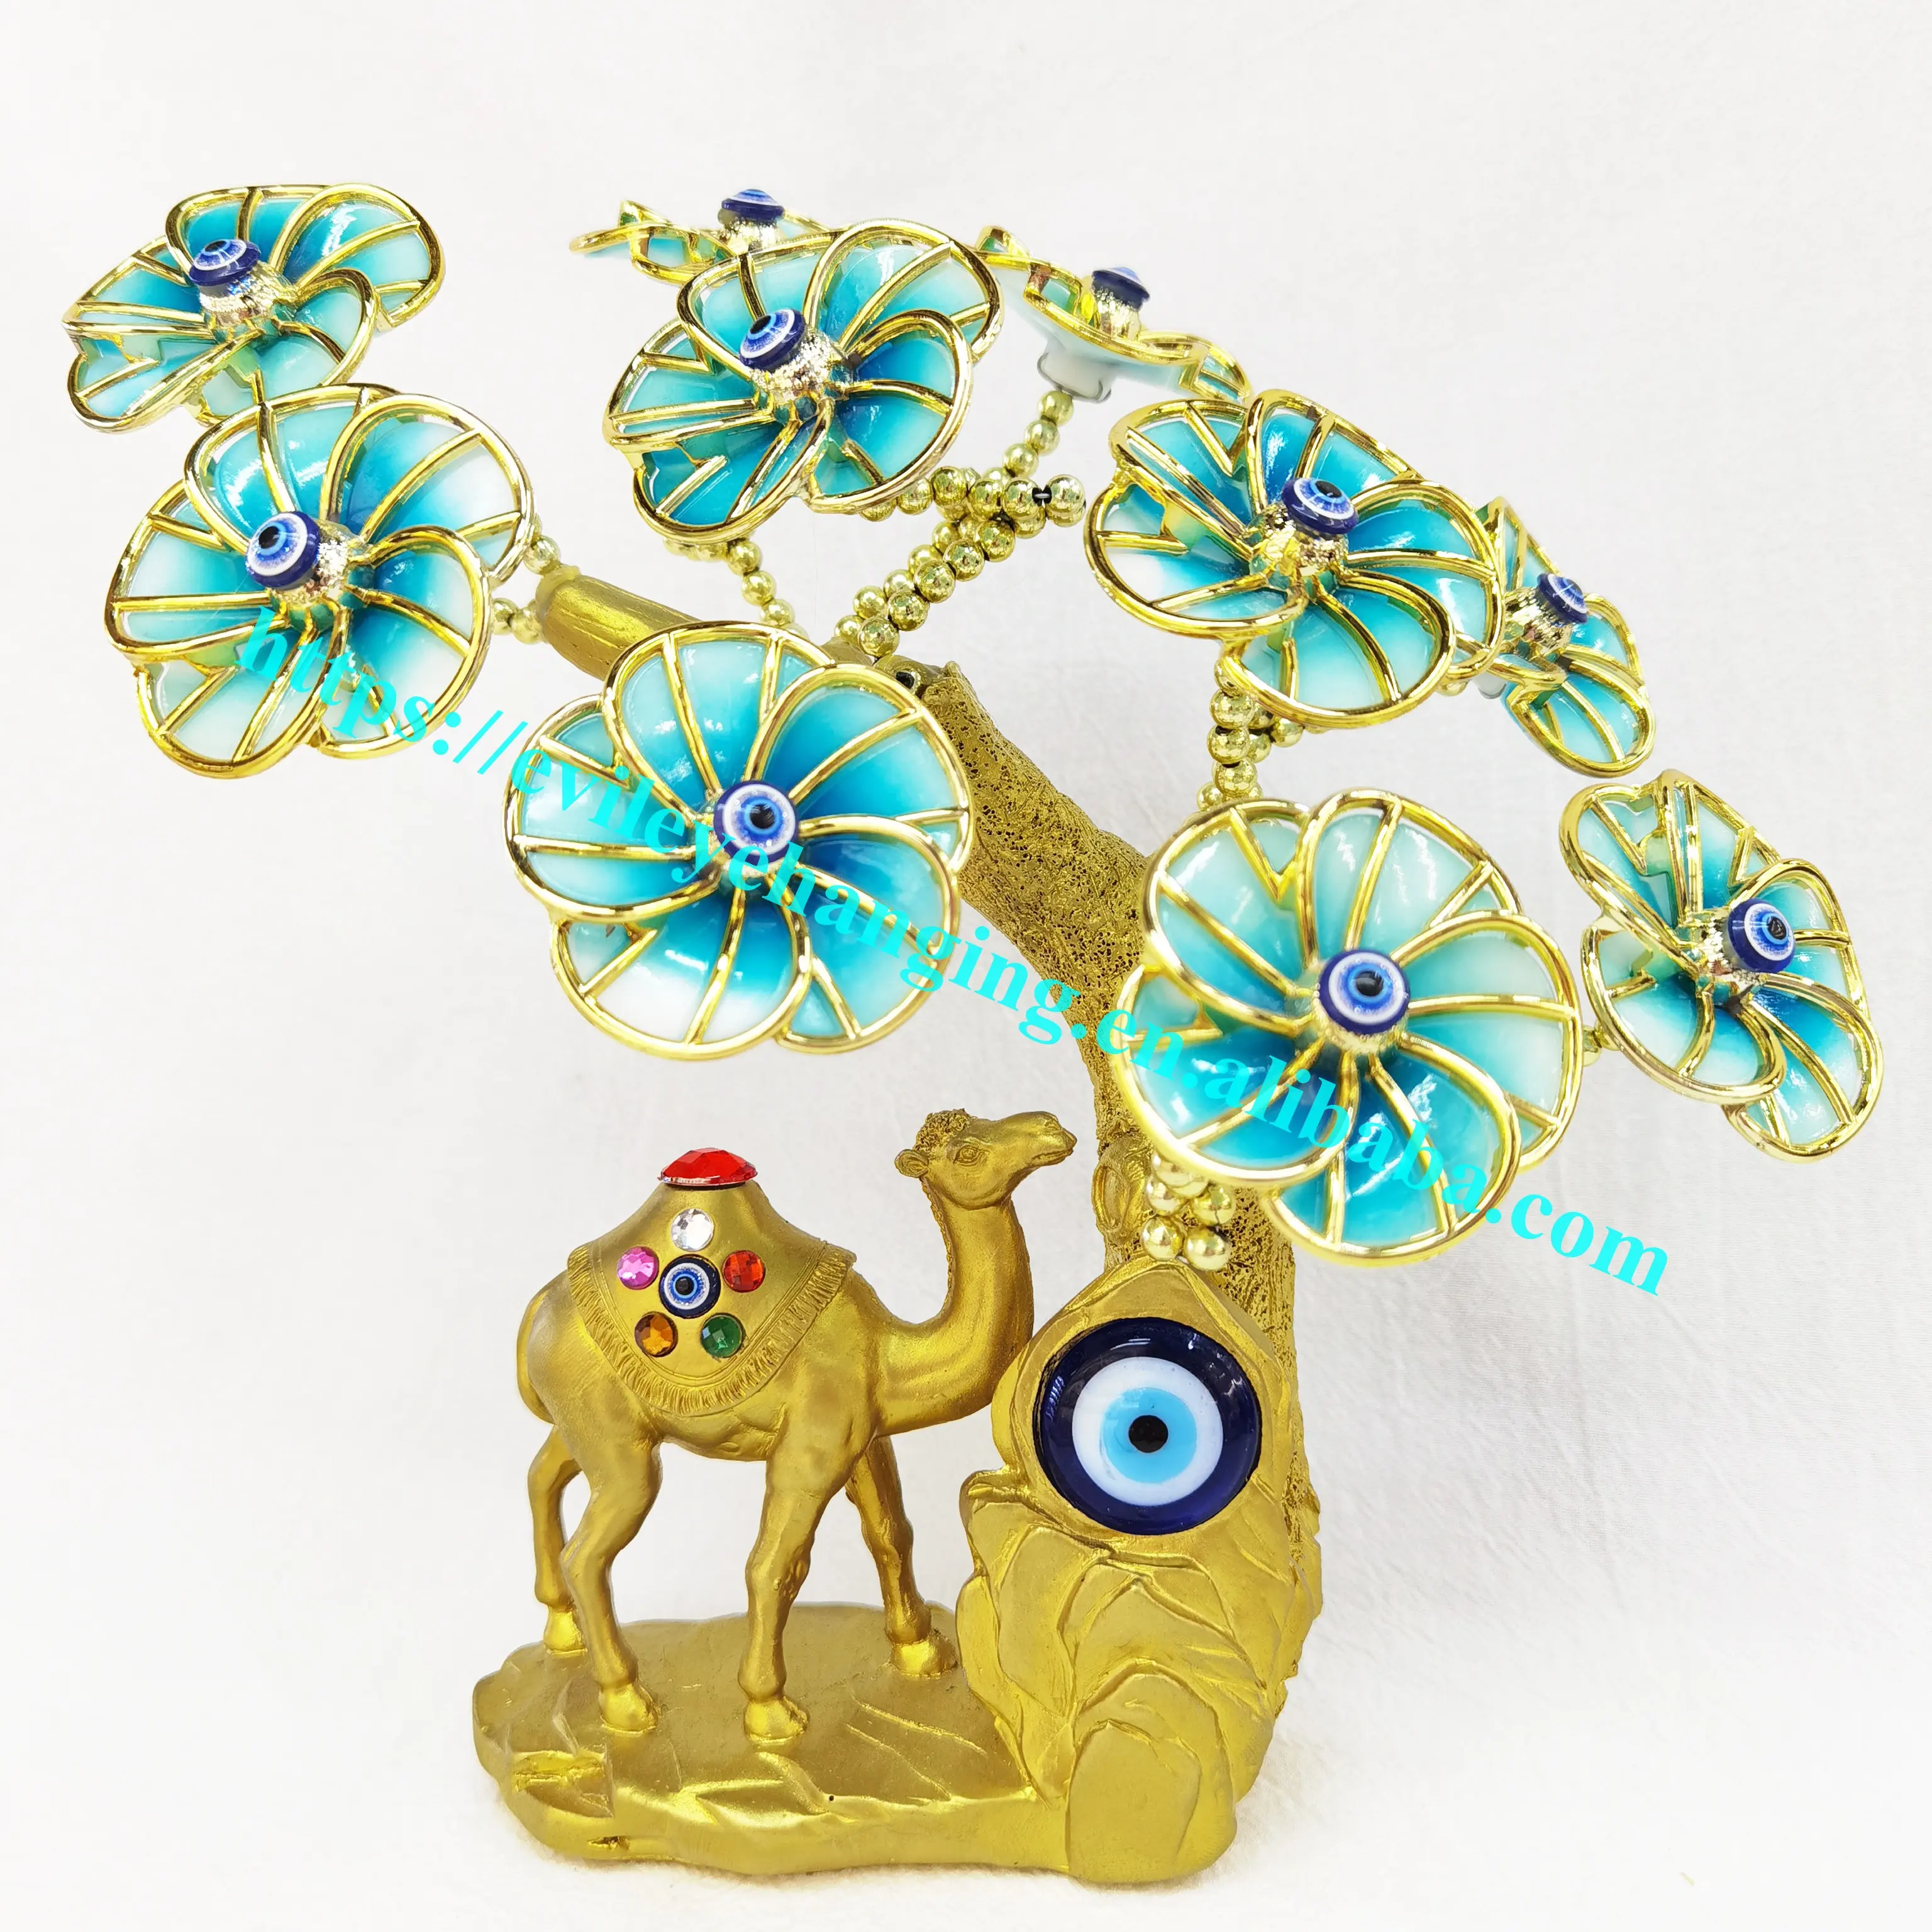 花と青い邪眼の生命の木キャメル独創的な装飾ギフト樹脂家の装飾